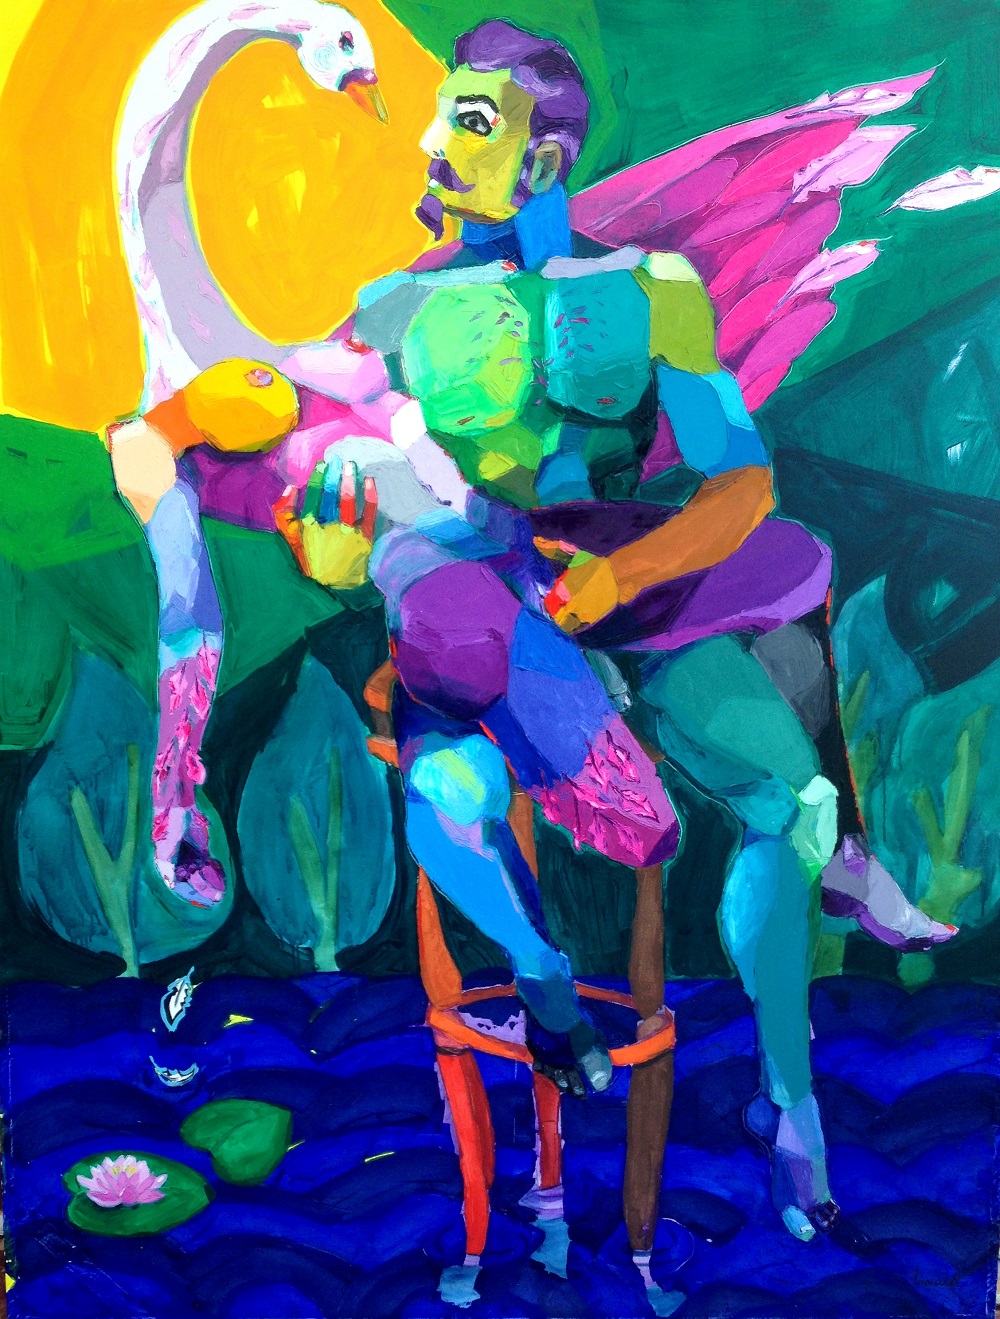 “El cisne”, 2015. Acrílico/lienzo, 260 x 200 cm.
